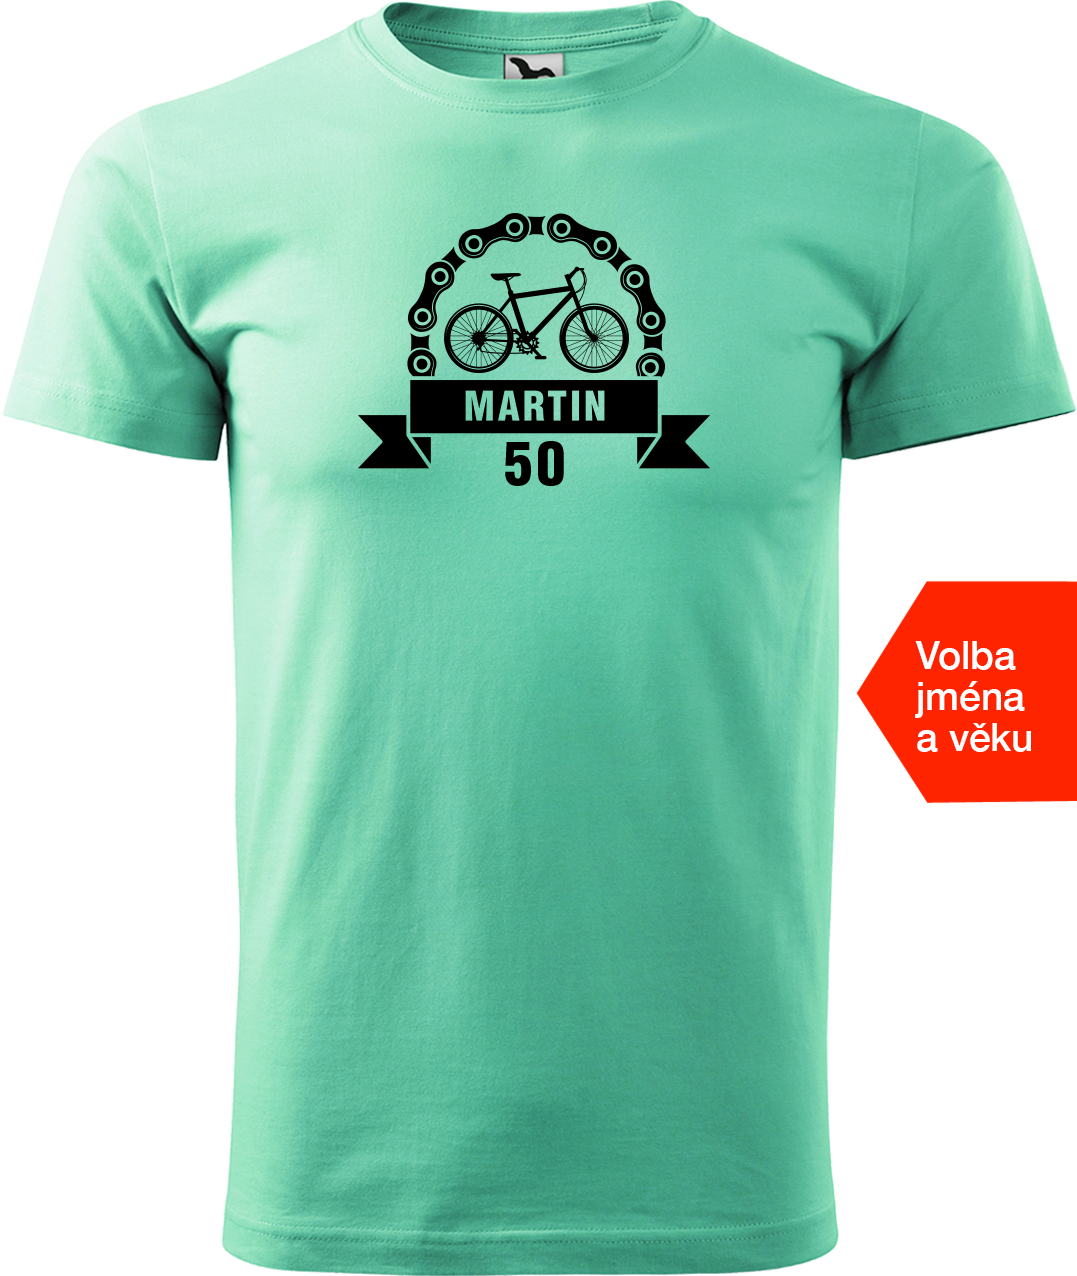 Pánské tričko pro cyklistu se jménem a věkem - Blahopřání Velikost: 4XL, Barva: Mátová (95)